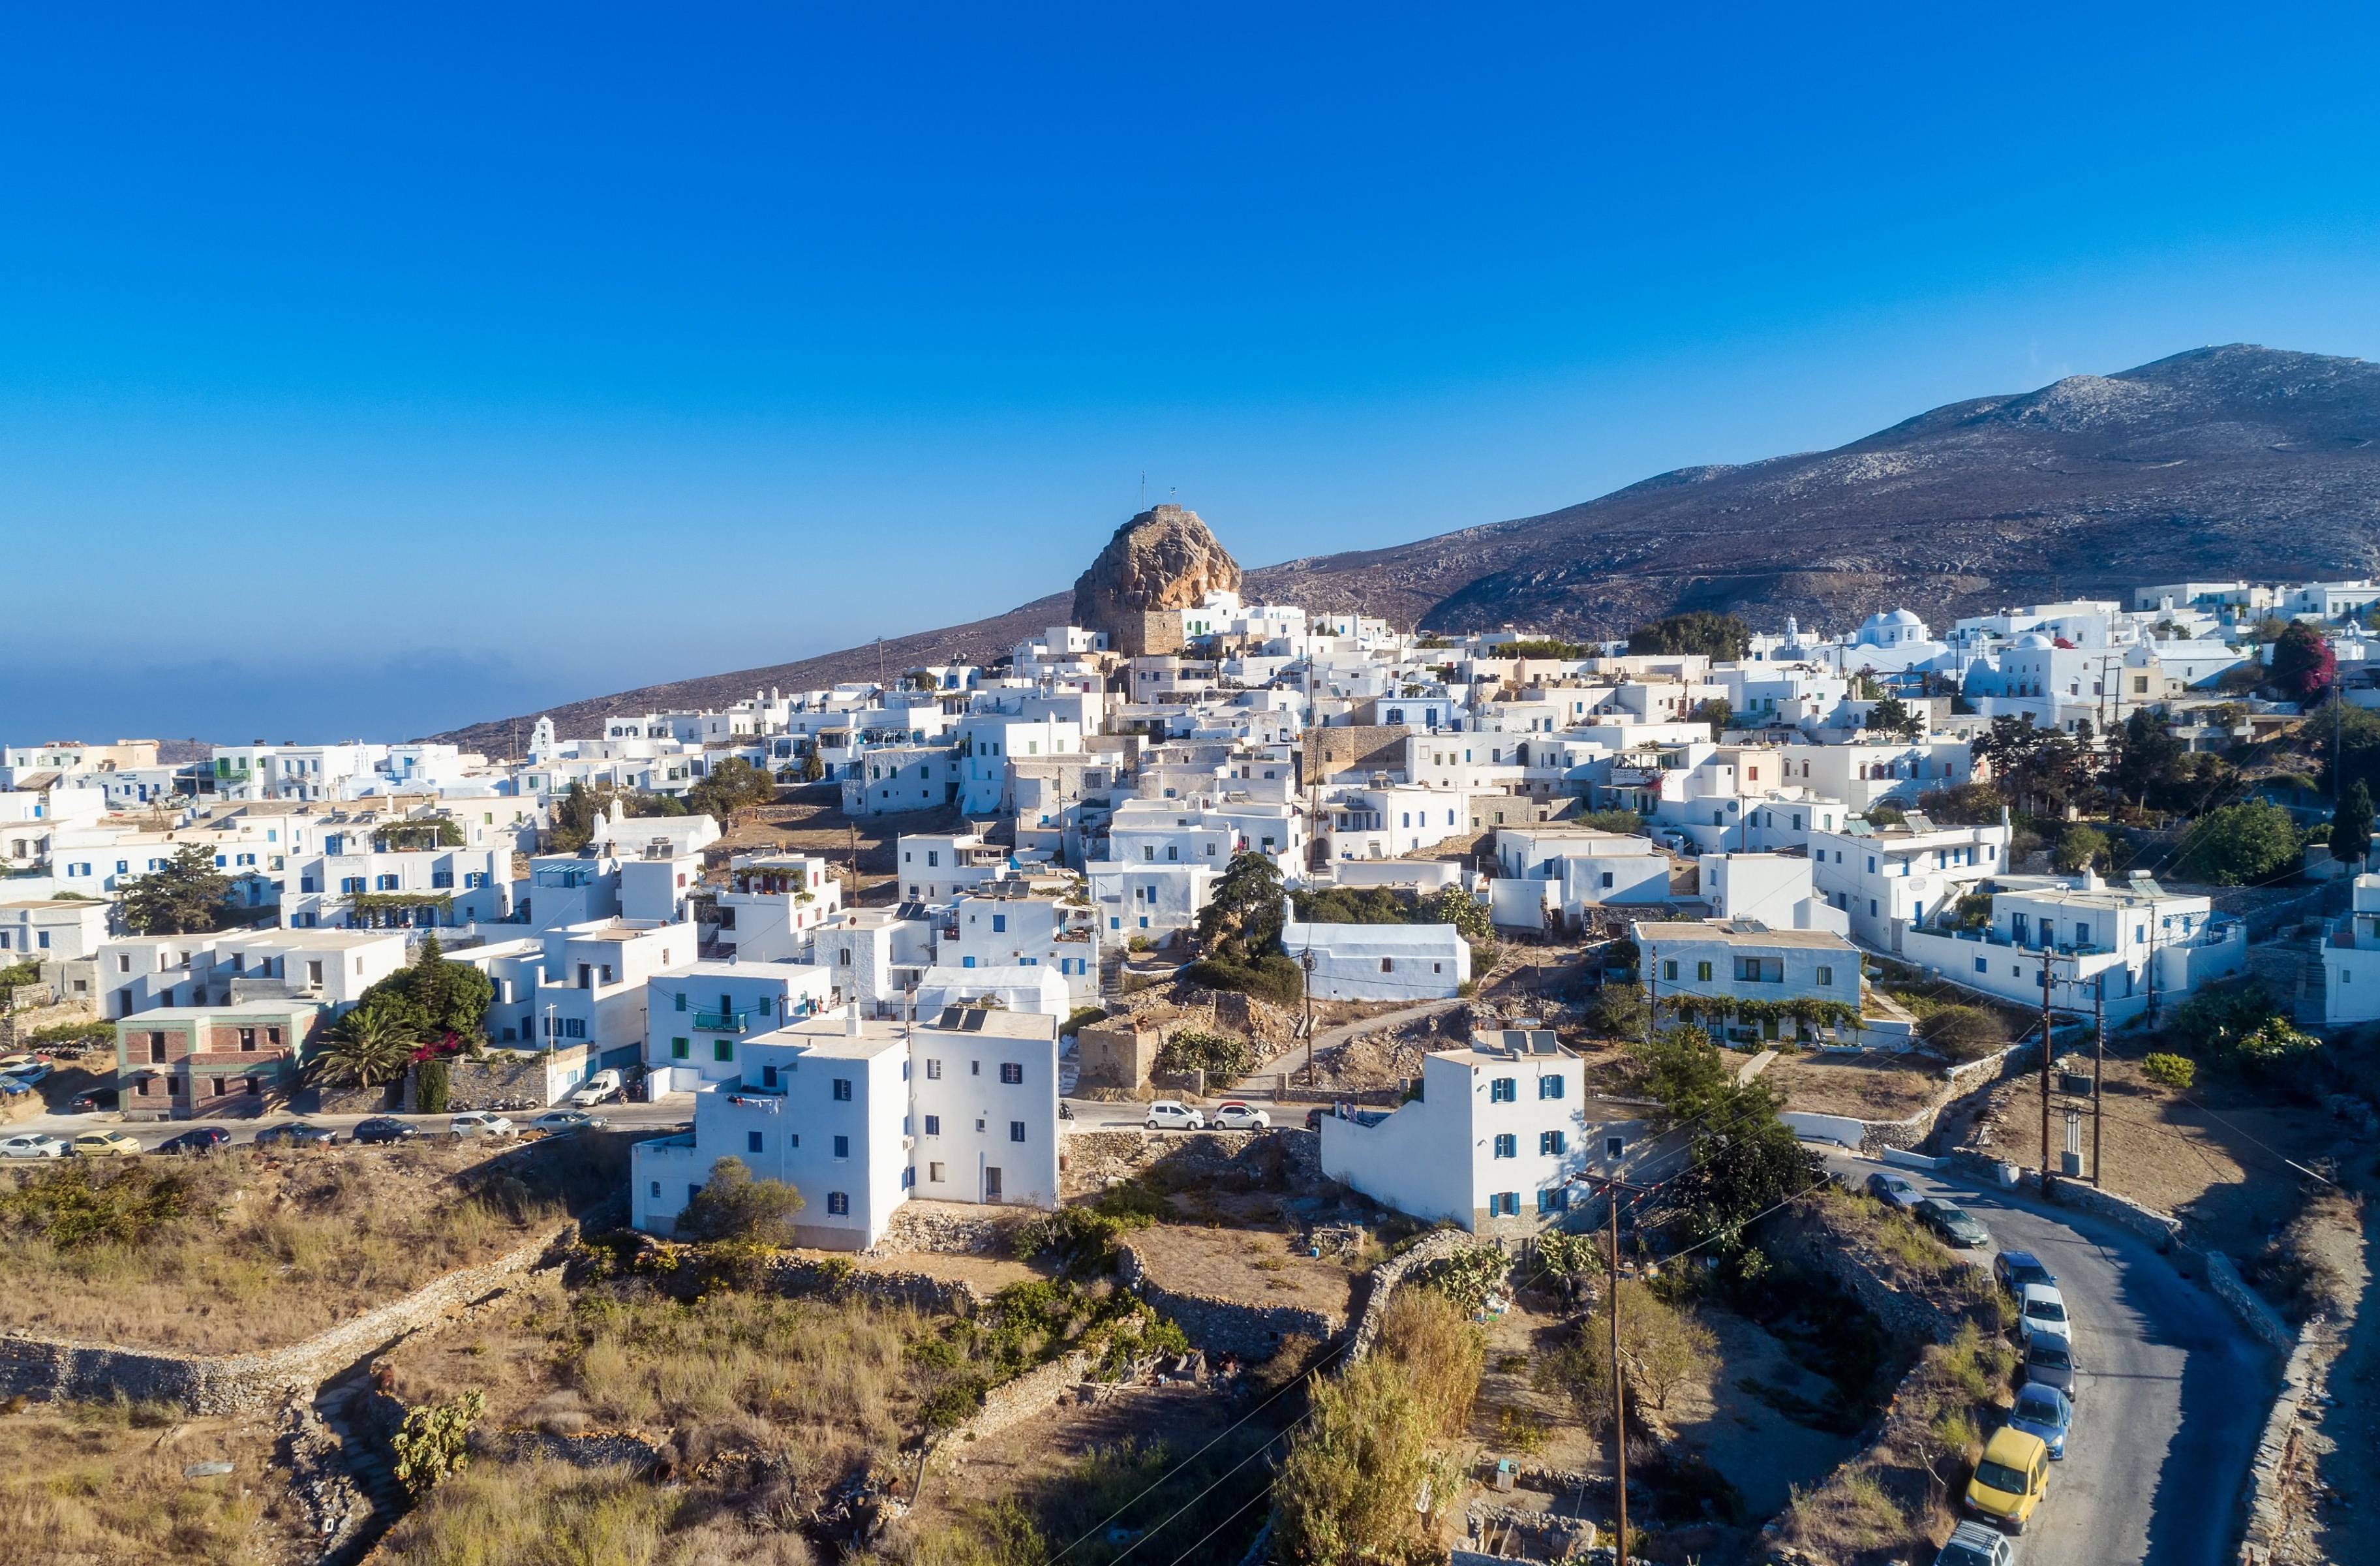 Départ de Naxos & arrivée à Amorgos